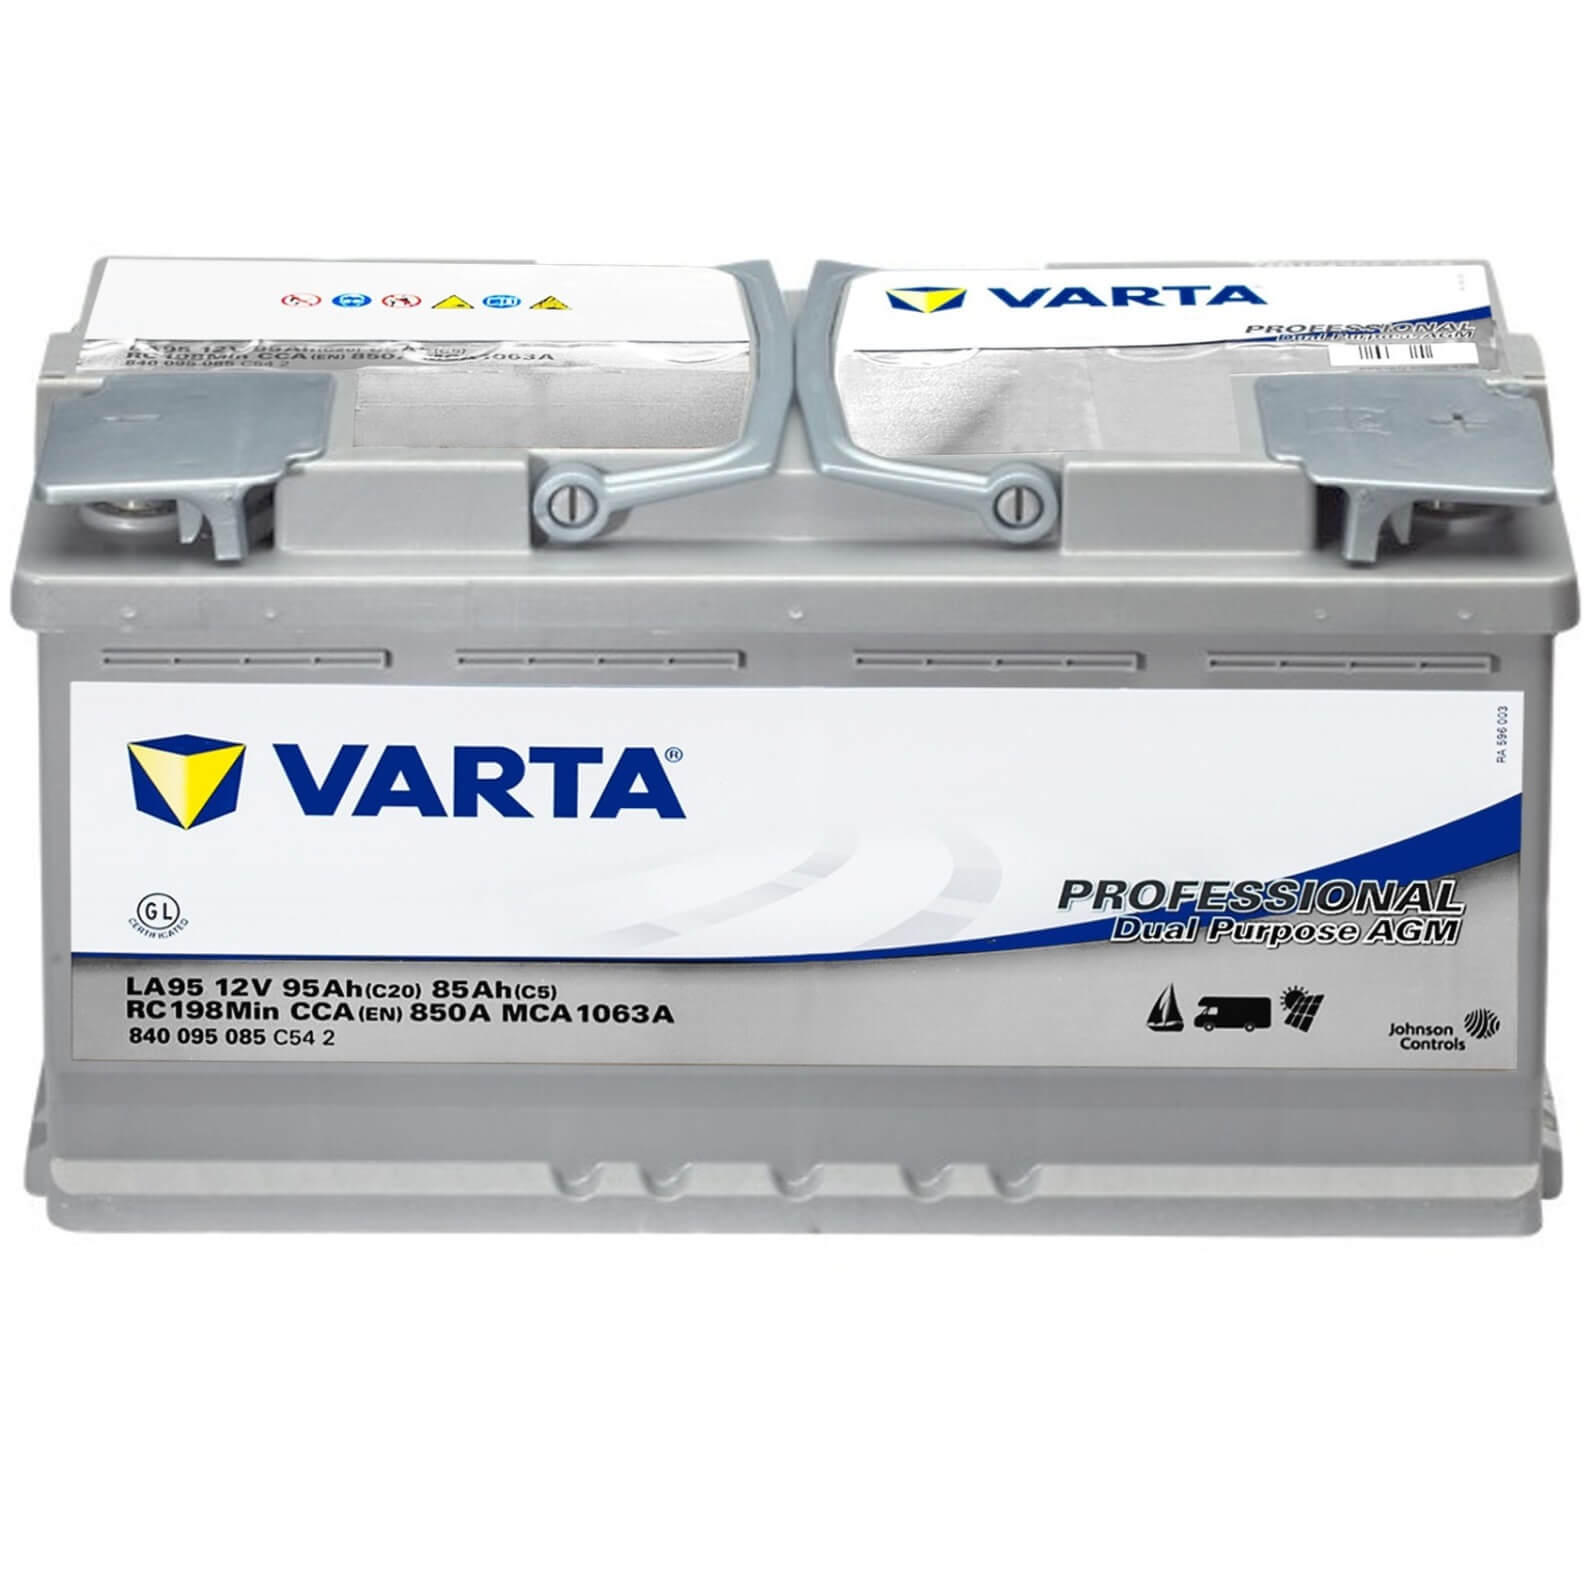 Varta LA95 Professional AGM 12V 95Ah Batterie 840095085C542